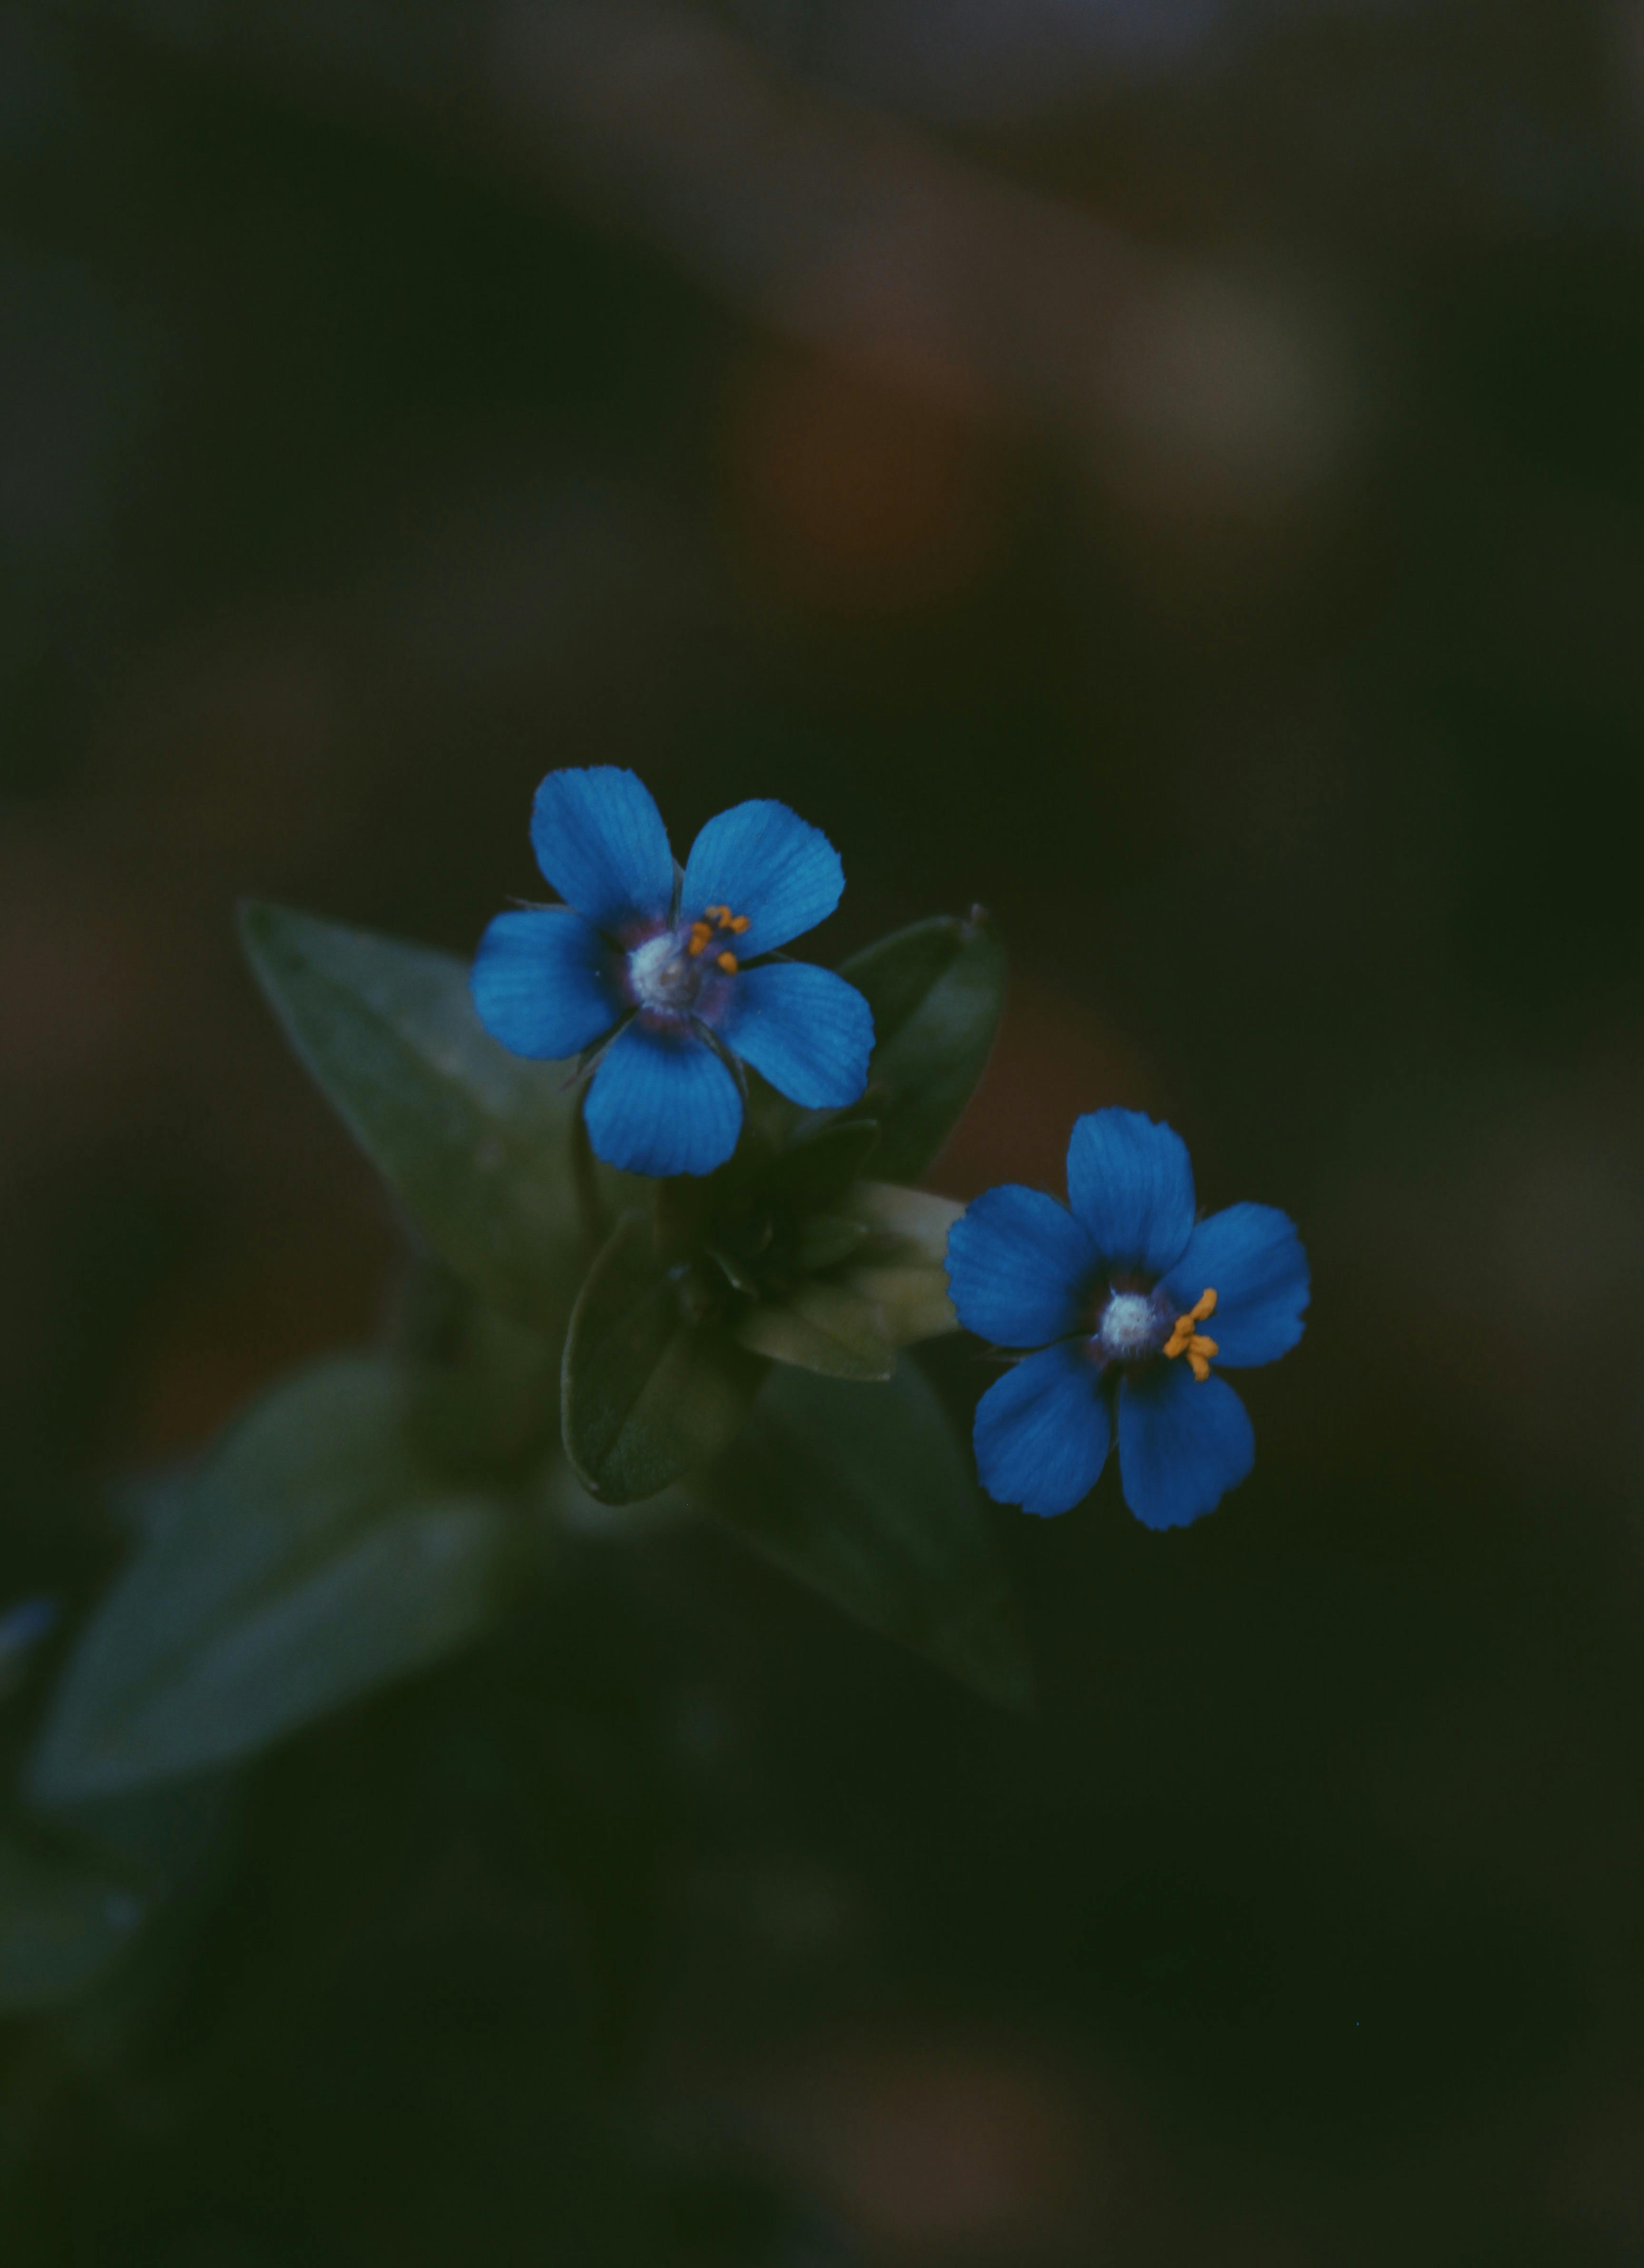 2つの青い5枚の花びらの花 無料の写真素材